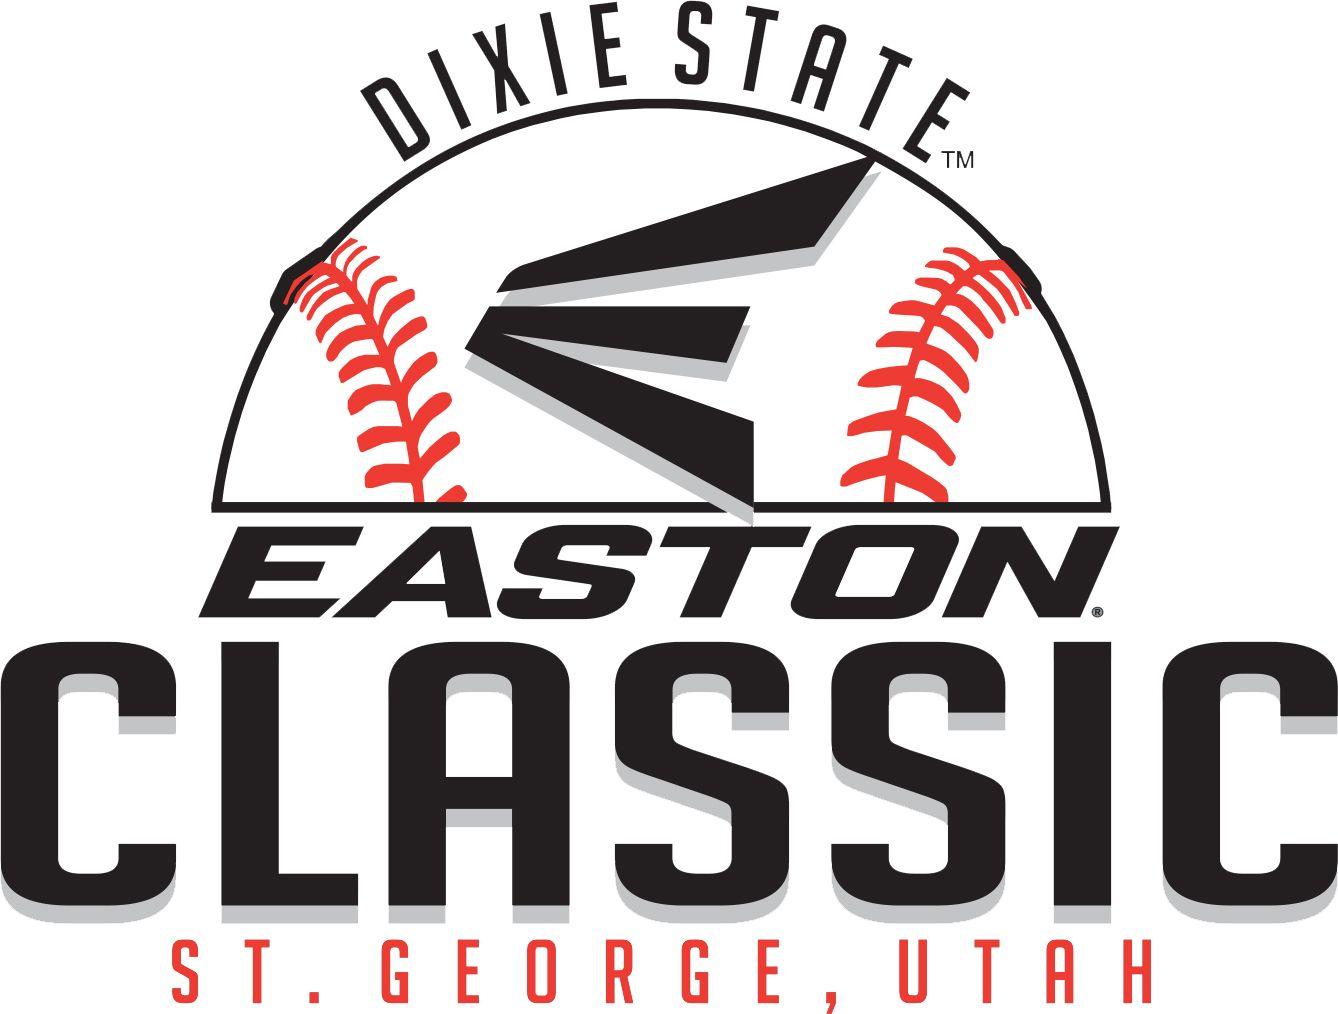 Easton Football Logo - 2018 Dixie State Softball Easton Classic (Feb. 8-11) - Dixie State ...